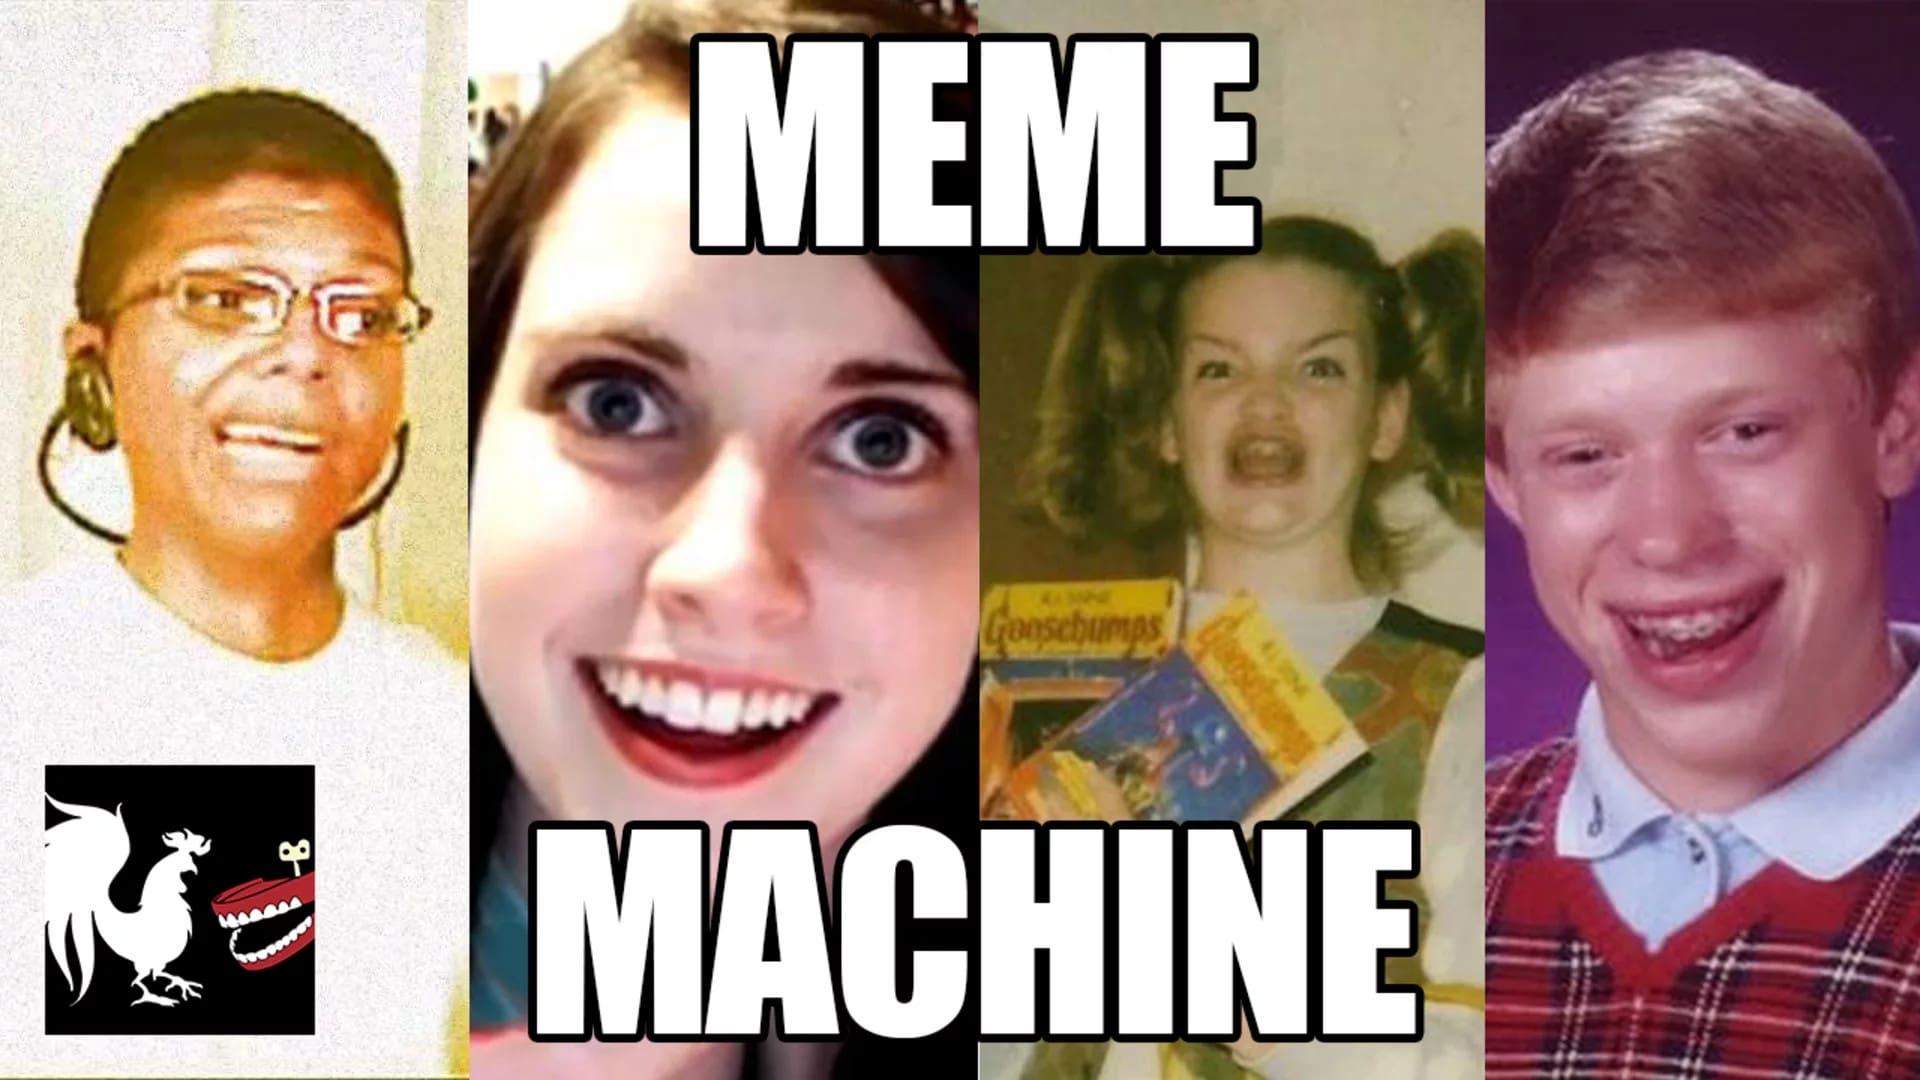 The Meme Machine backdrop